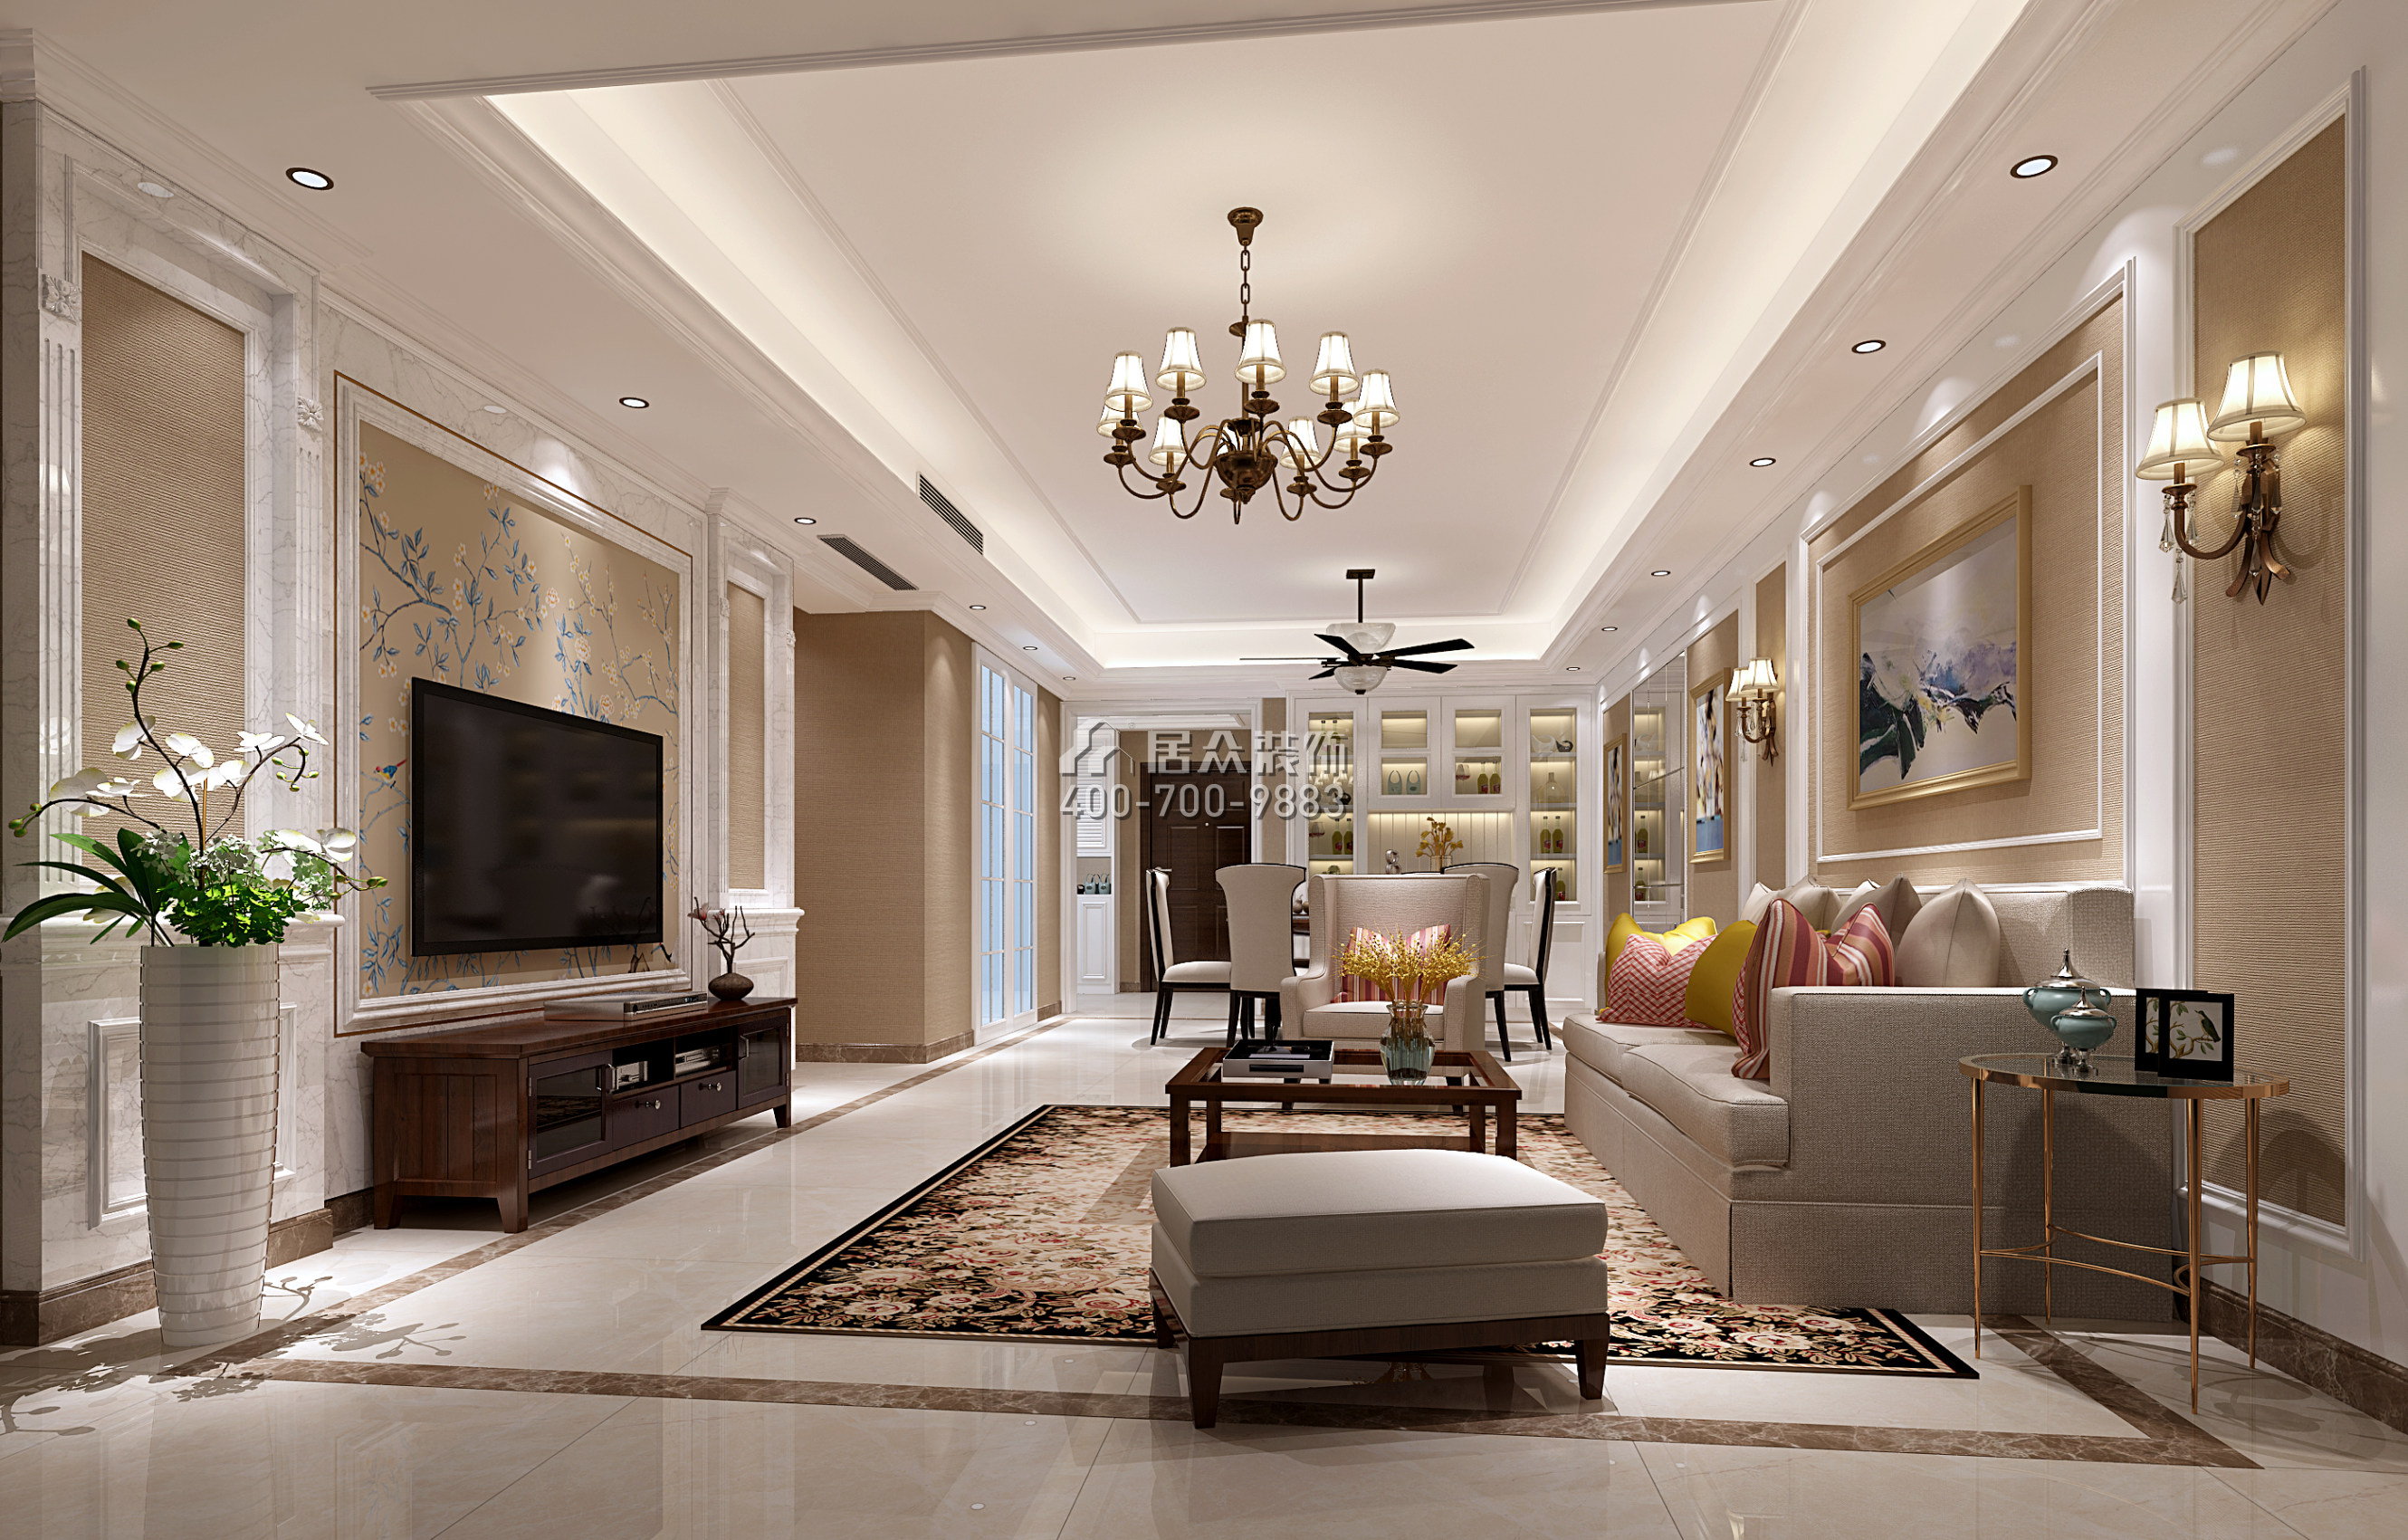 坪洲新村二期120平方米美式風格平層戶型客廳裝修效果圖